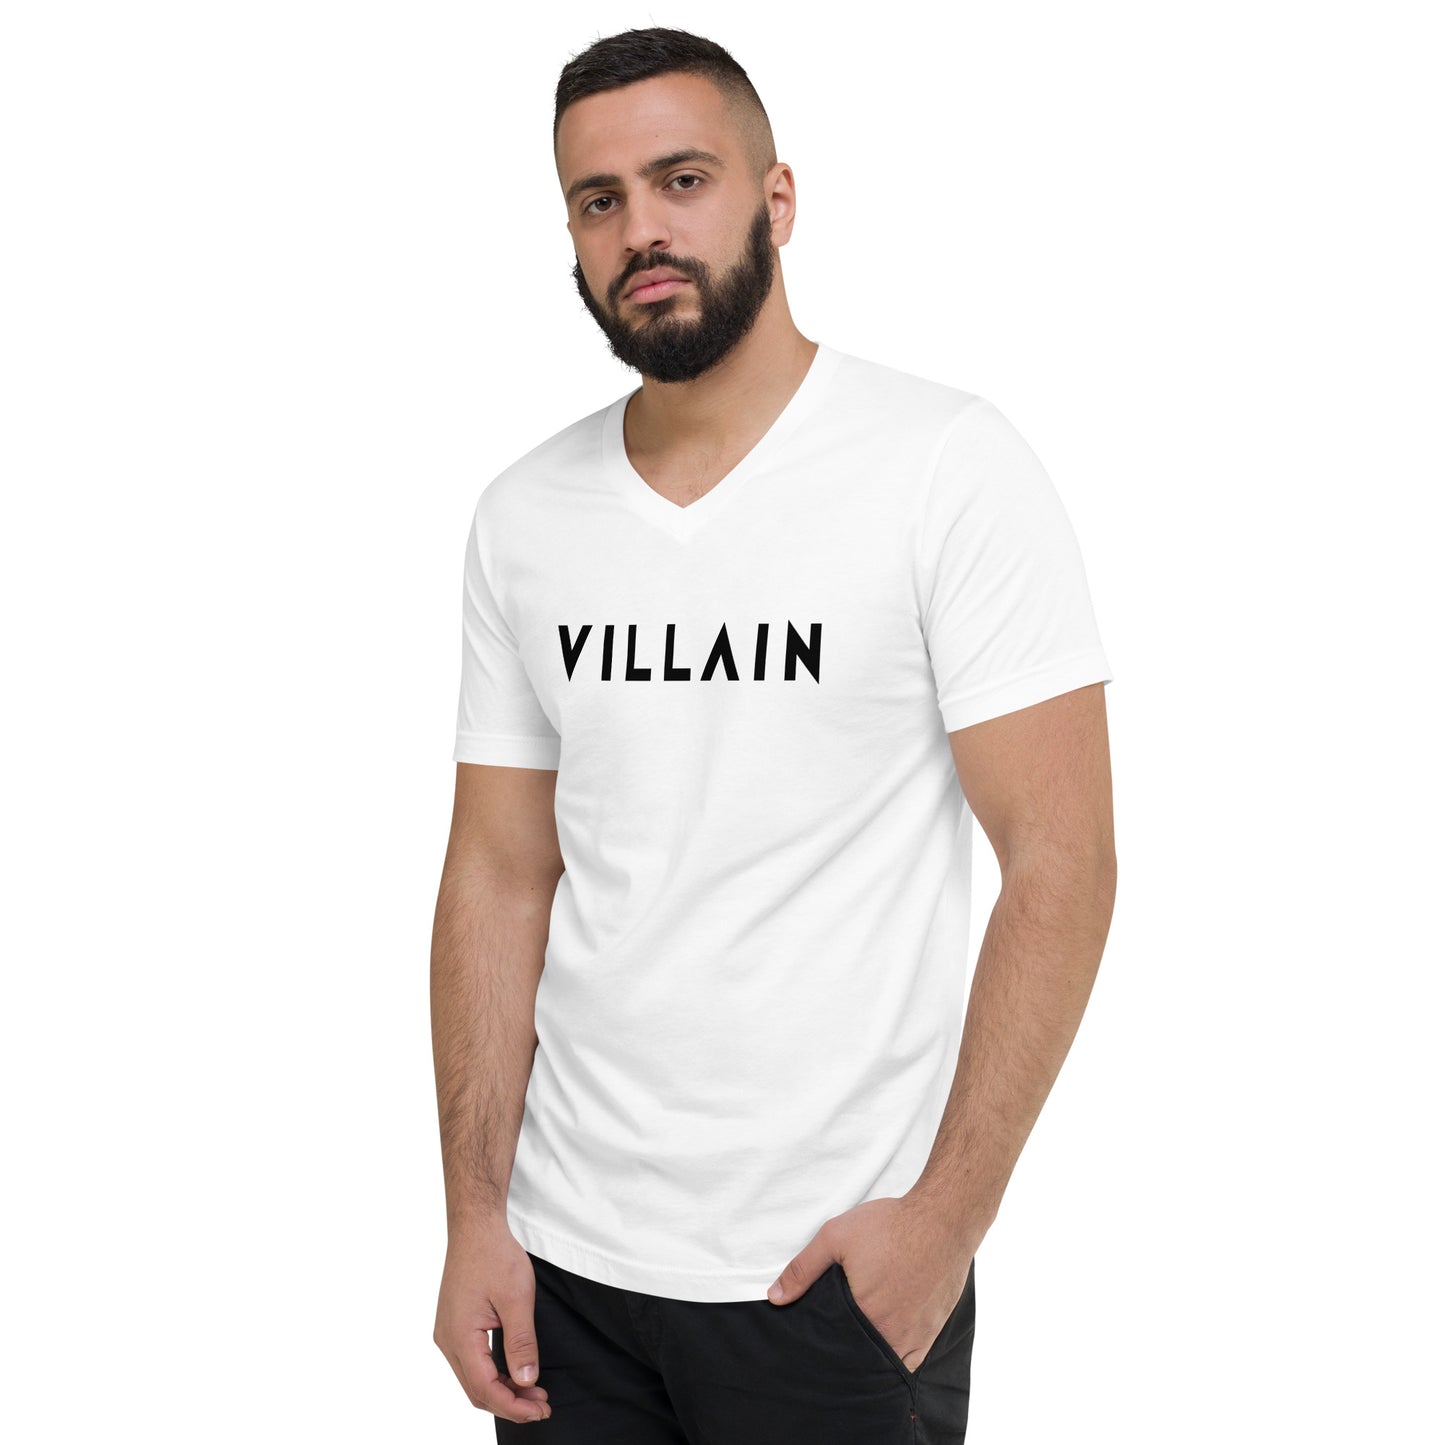 Villain Unisex Short Sleeve V-Neck T-Shirt WHT